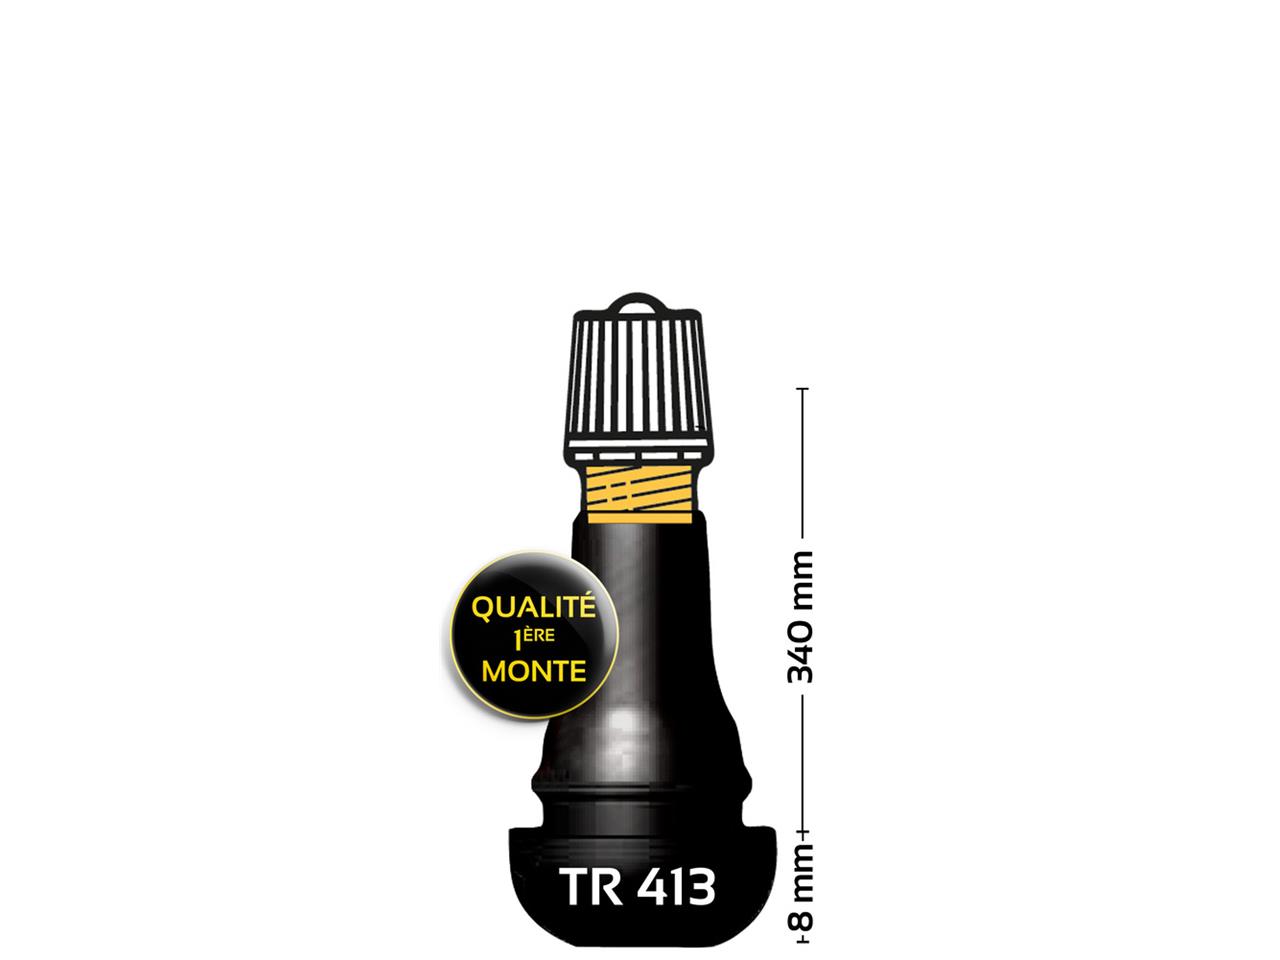 Valve droite caoutchoutée TR413 - Qualité 1ère monte